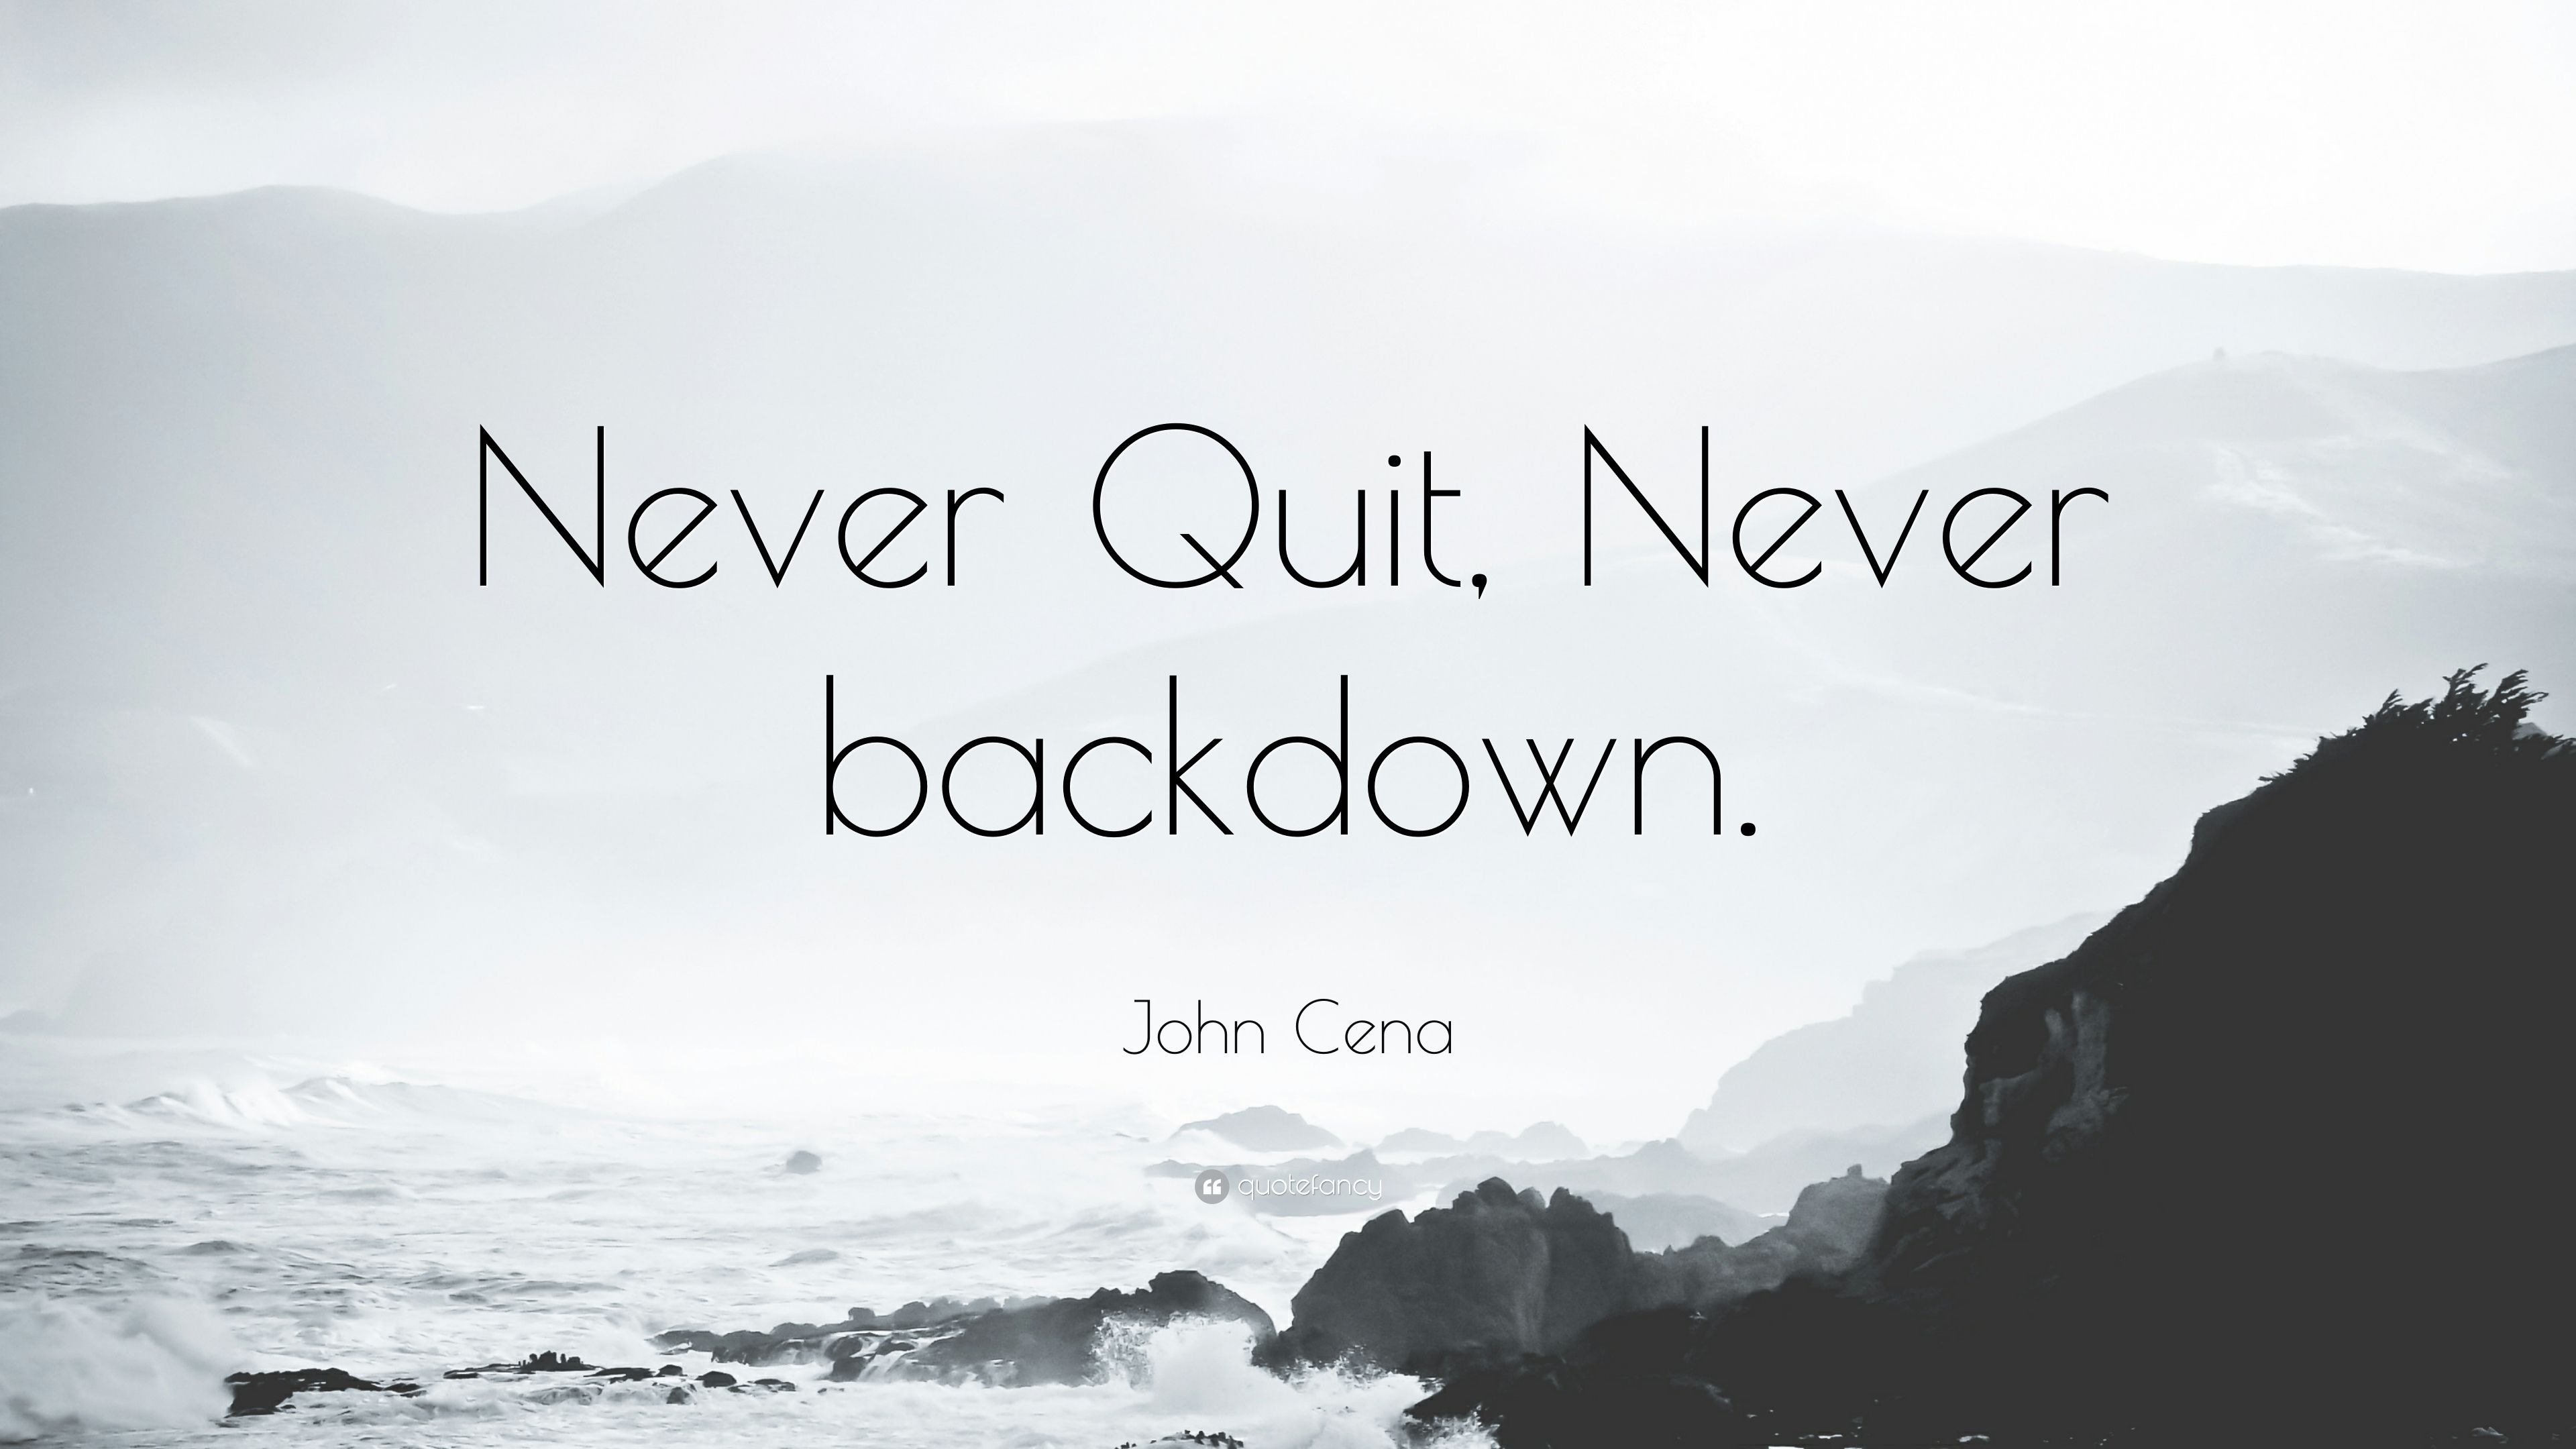 John Cena Quote: “Never Quit, Never backdown.” (12 wallpaper)